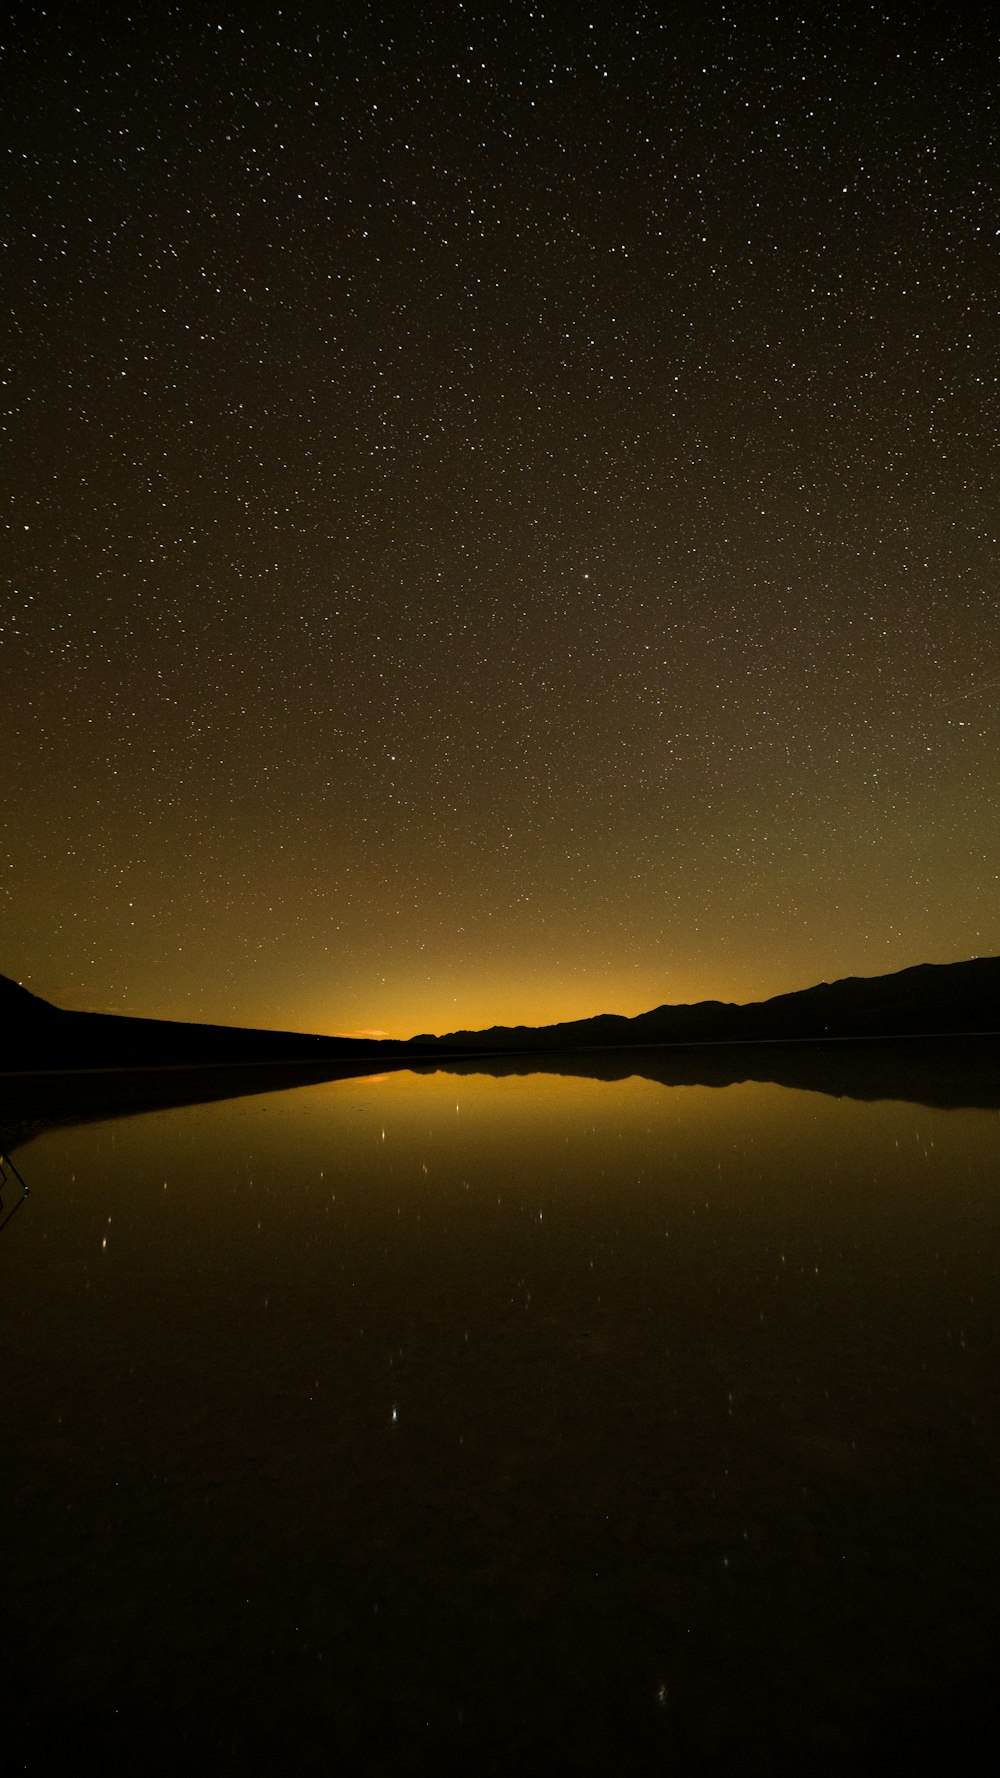 Un lago por la noche con estrellas en el cielo